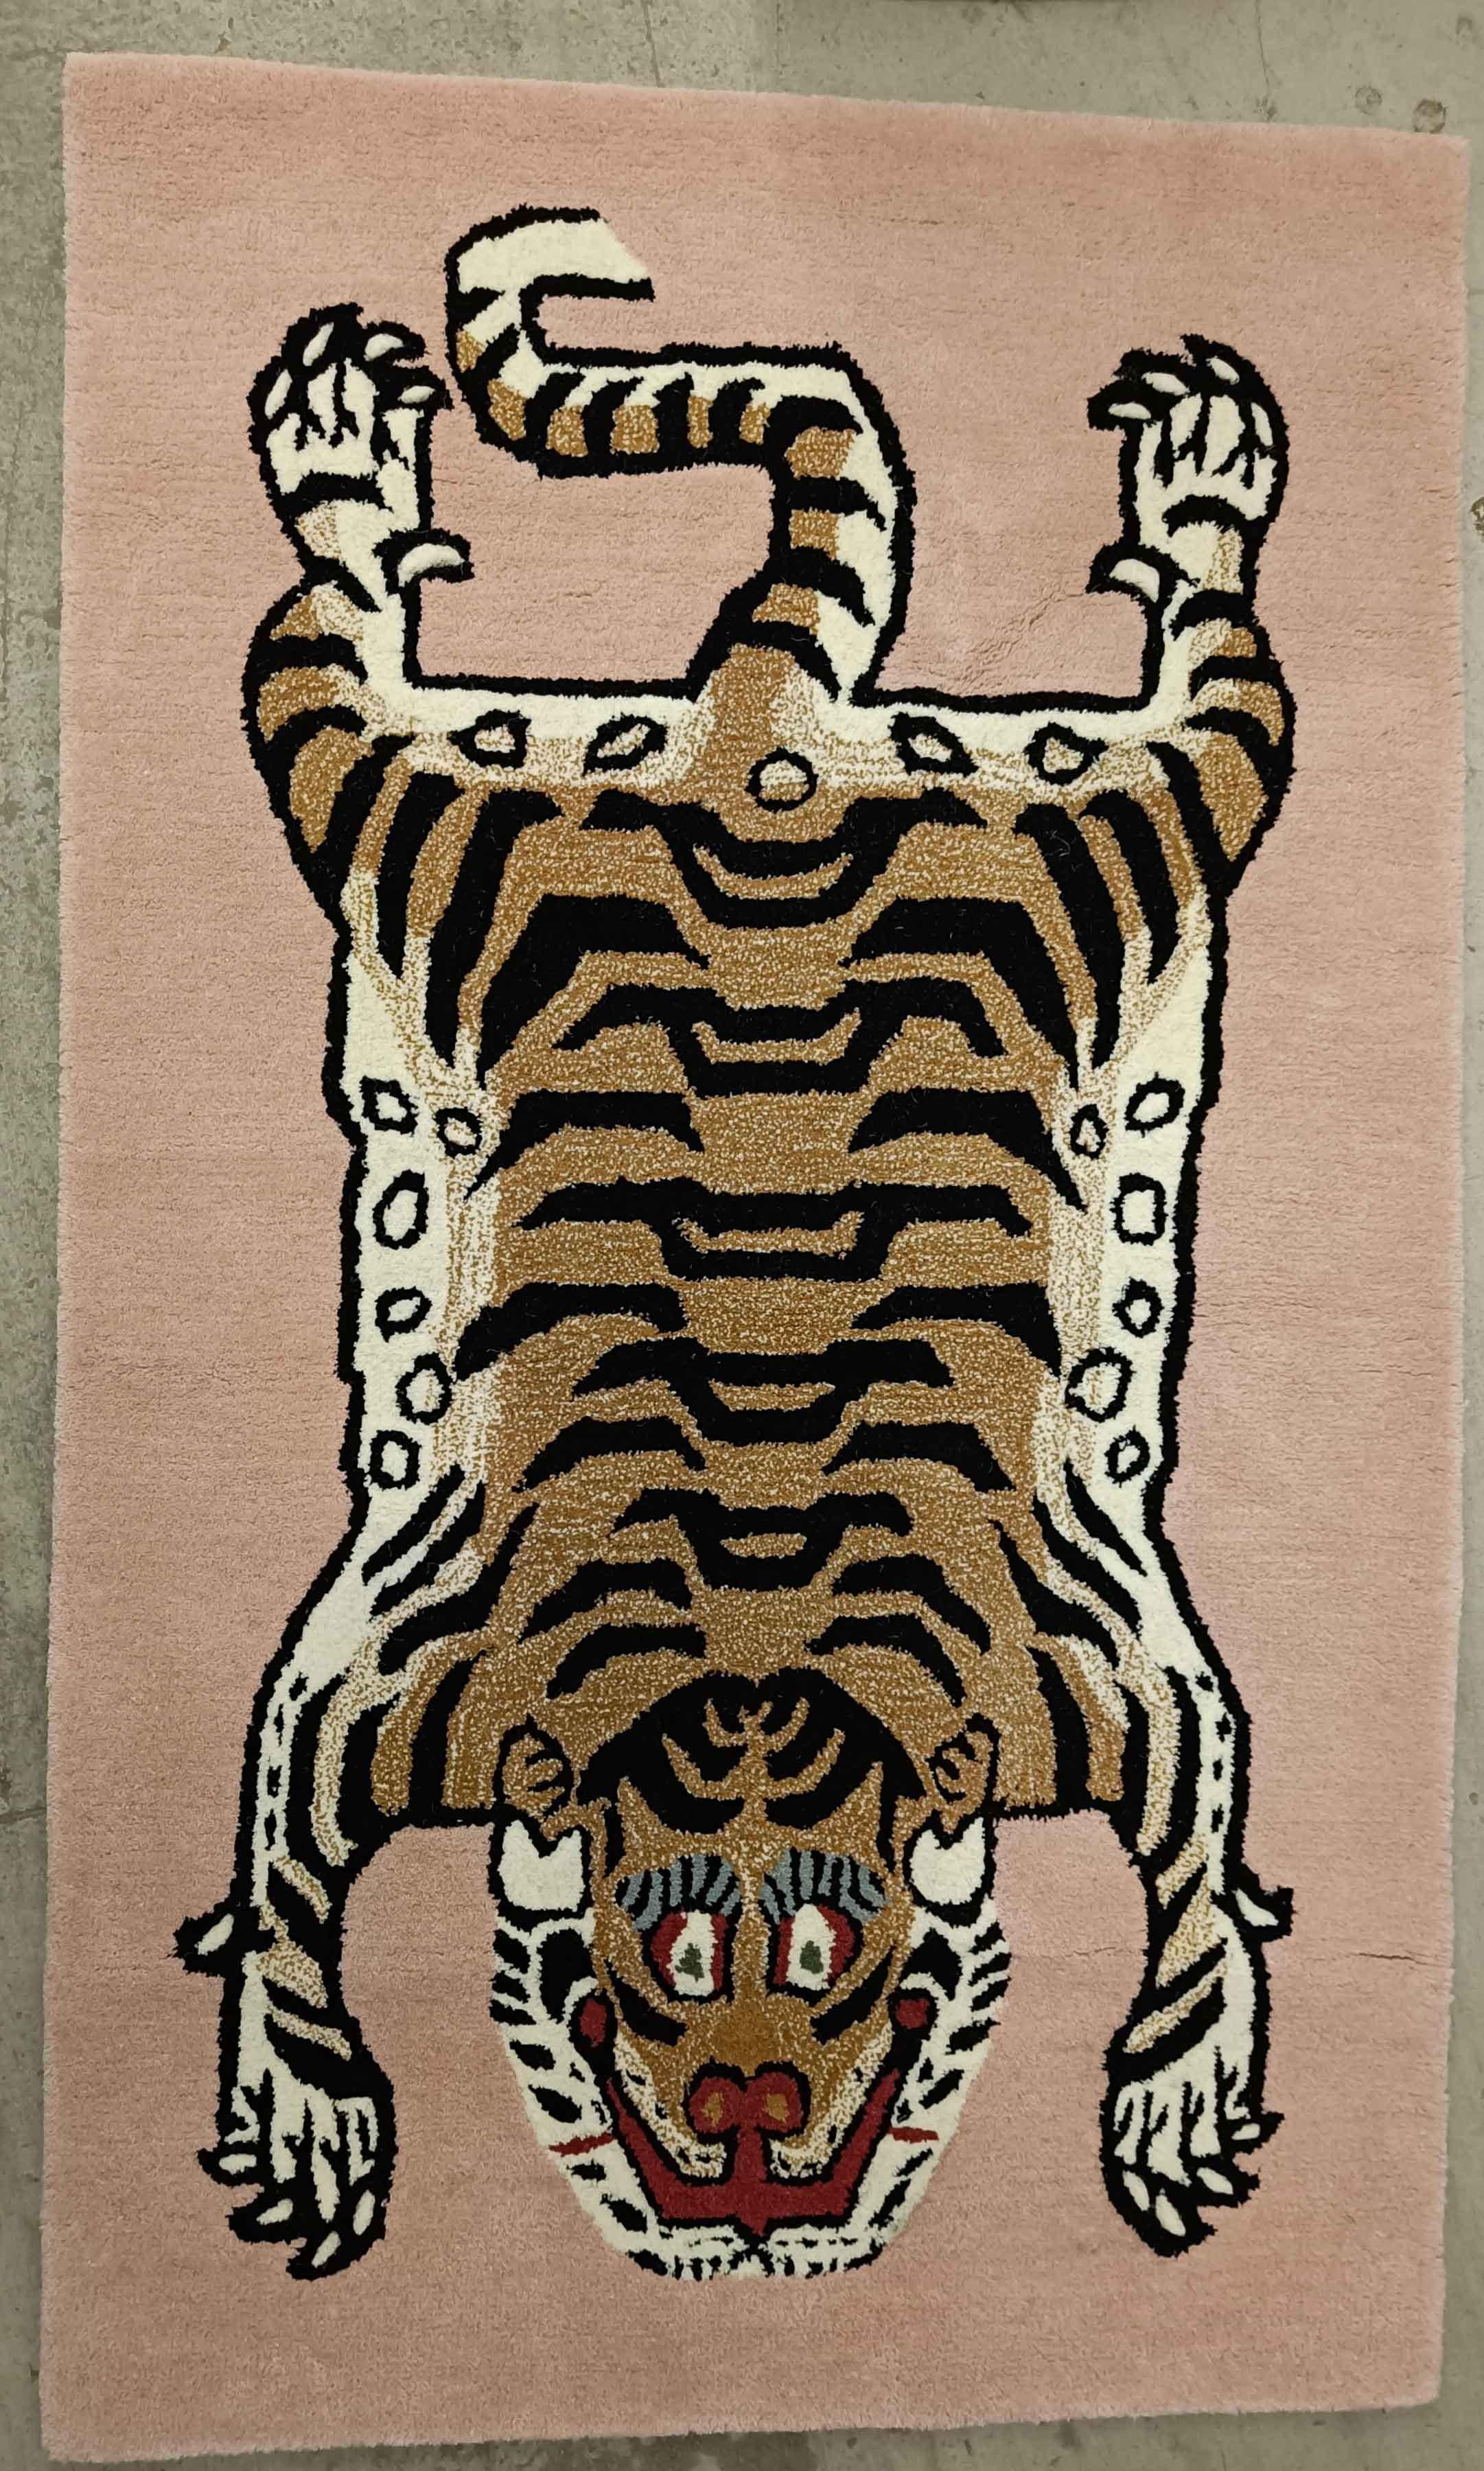  
Tapis de laine contemporain Mughal Tiger design Home décor Interior design Carpets

Tapis en laine de tigre à motifs moghols sur fond rose 

Nouveau fabriqué à la main en Inde 
 
Taille 150 x 90cm
 